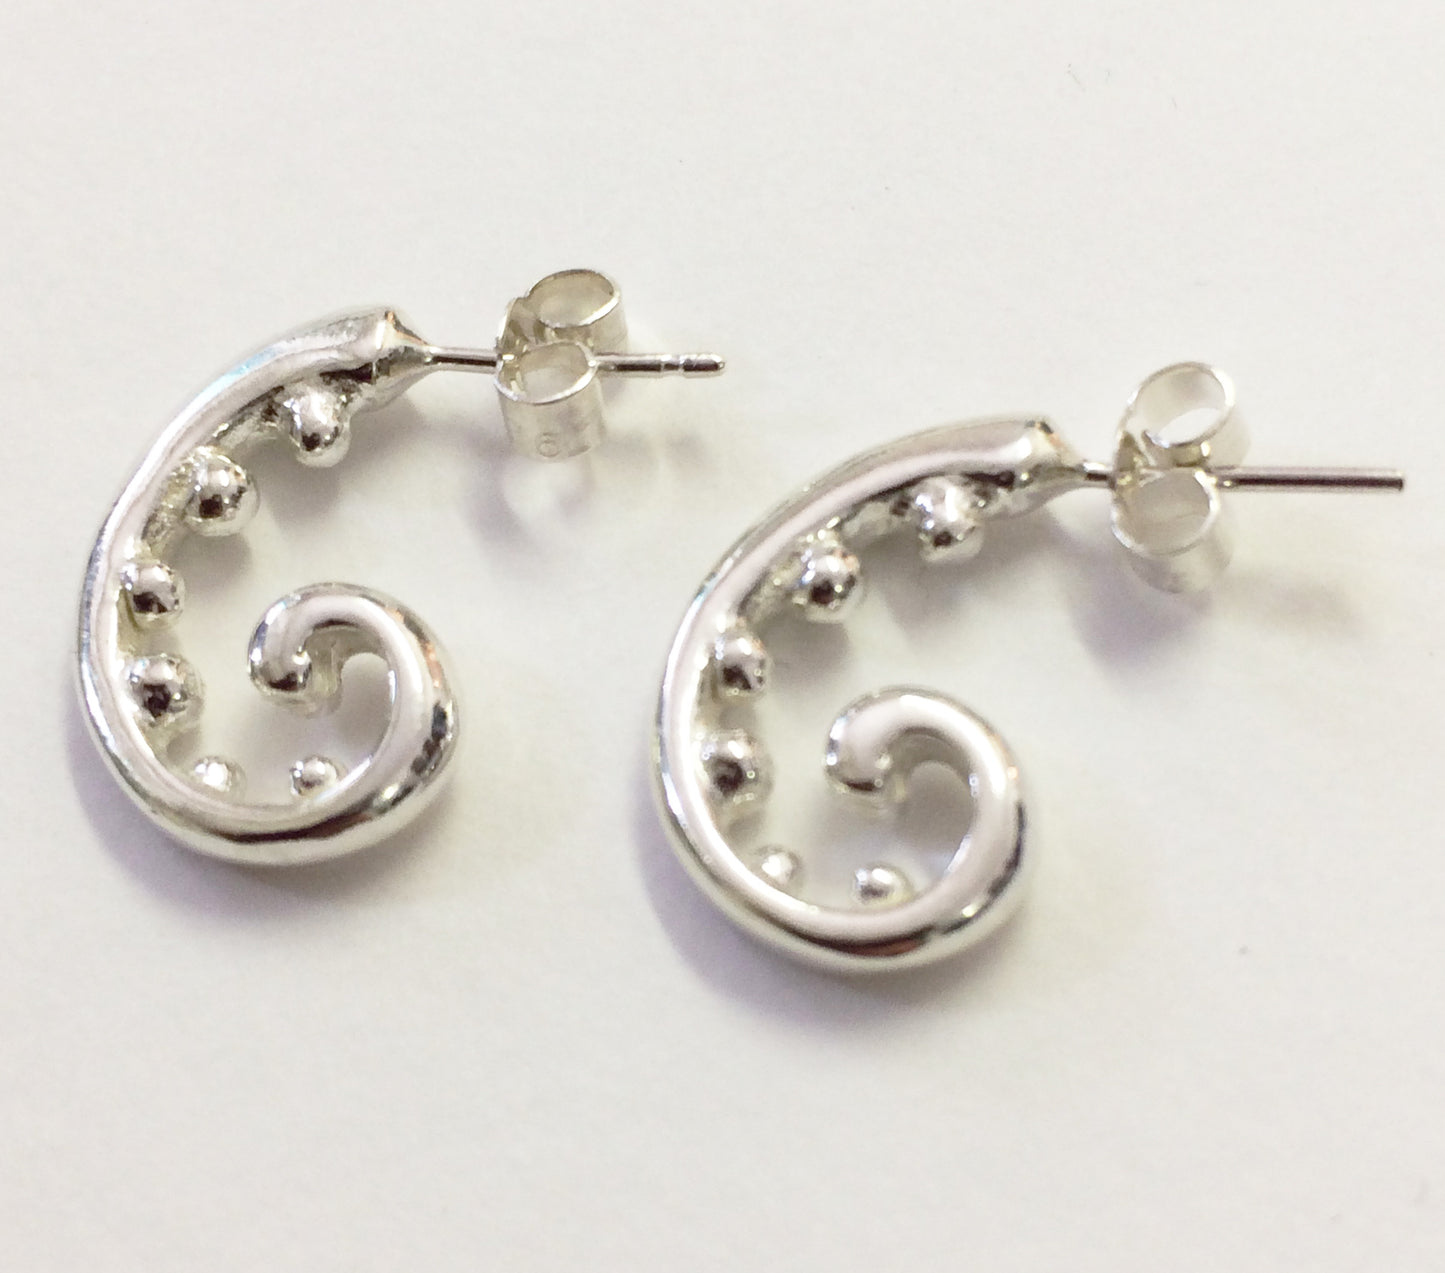 Silver fern earrings